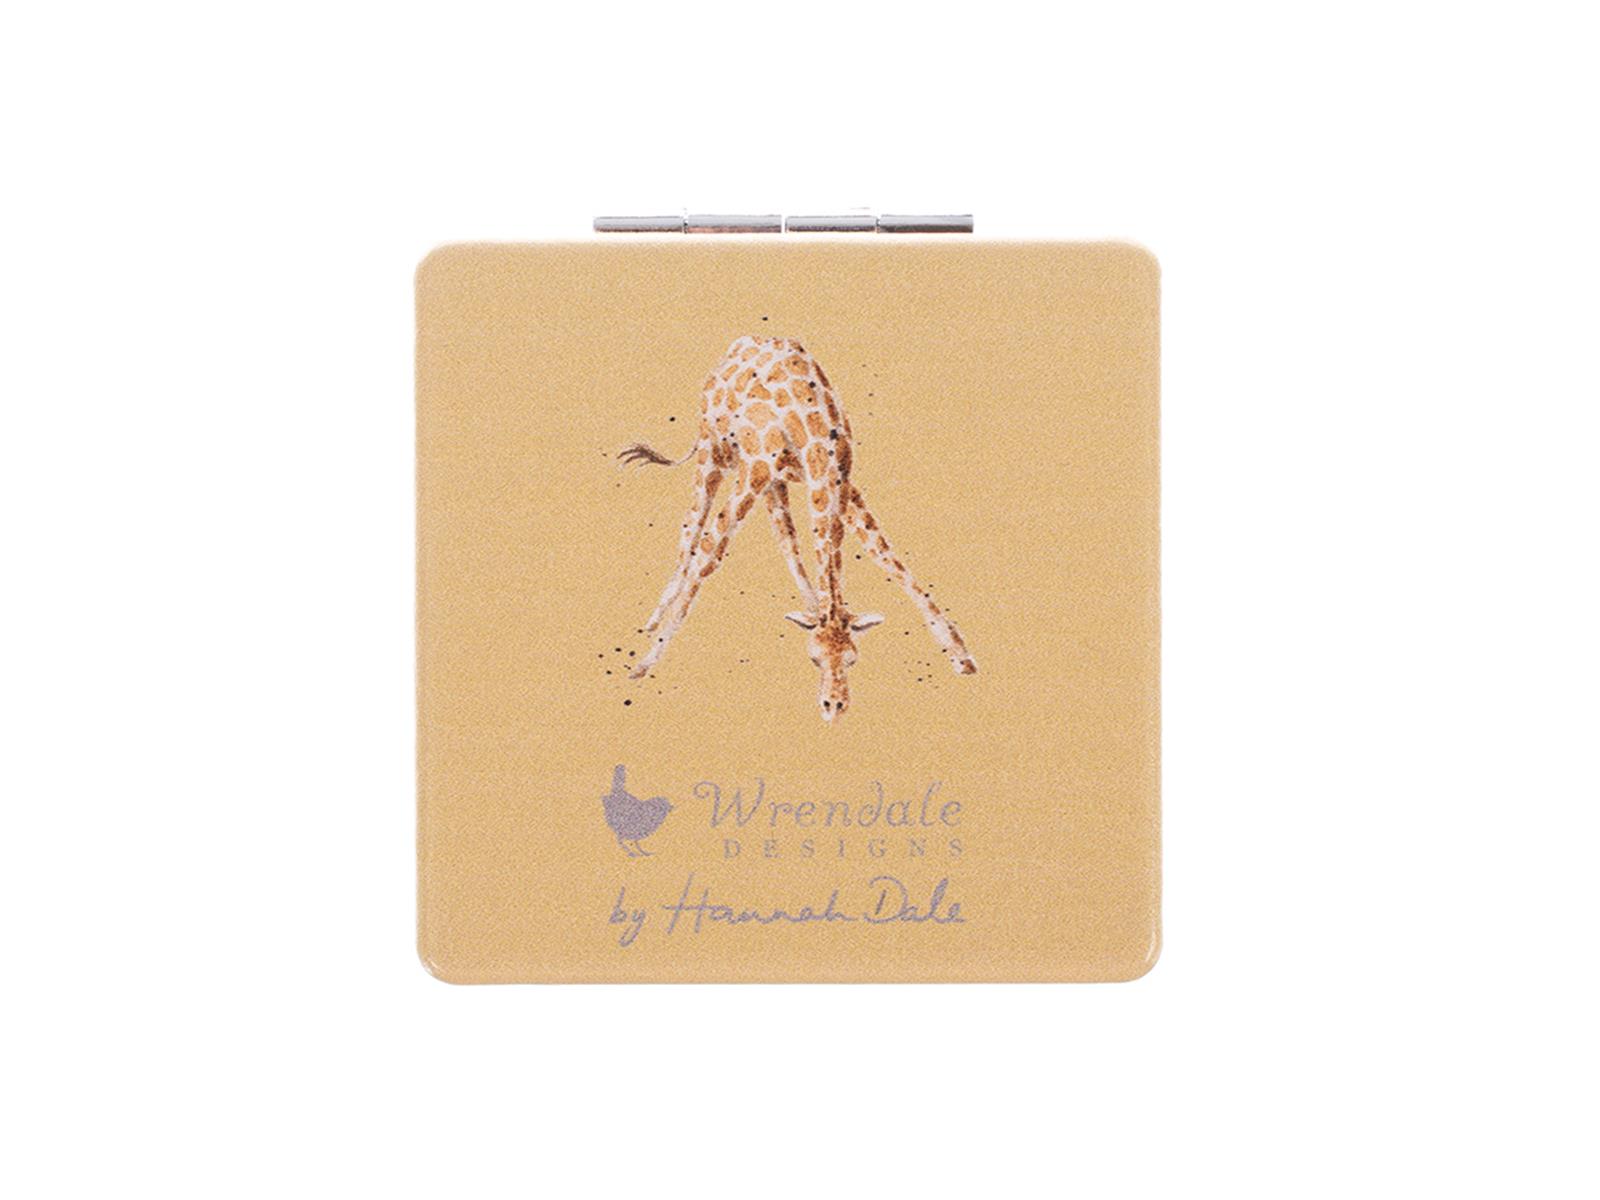 Wrendale Taschenspiegel zum klappen in Geschenkschachtel, Motiv Giraffe, gelb, 7x7cm